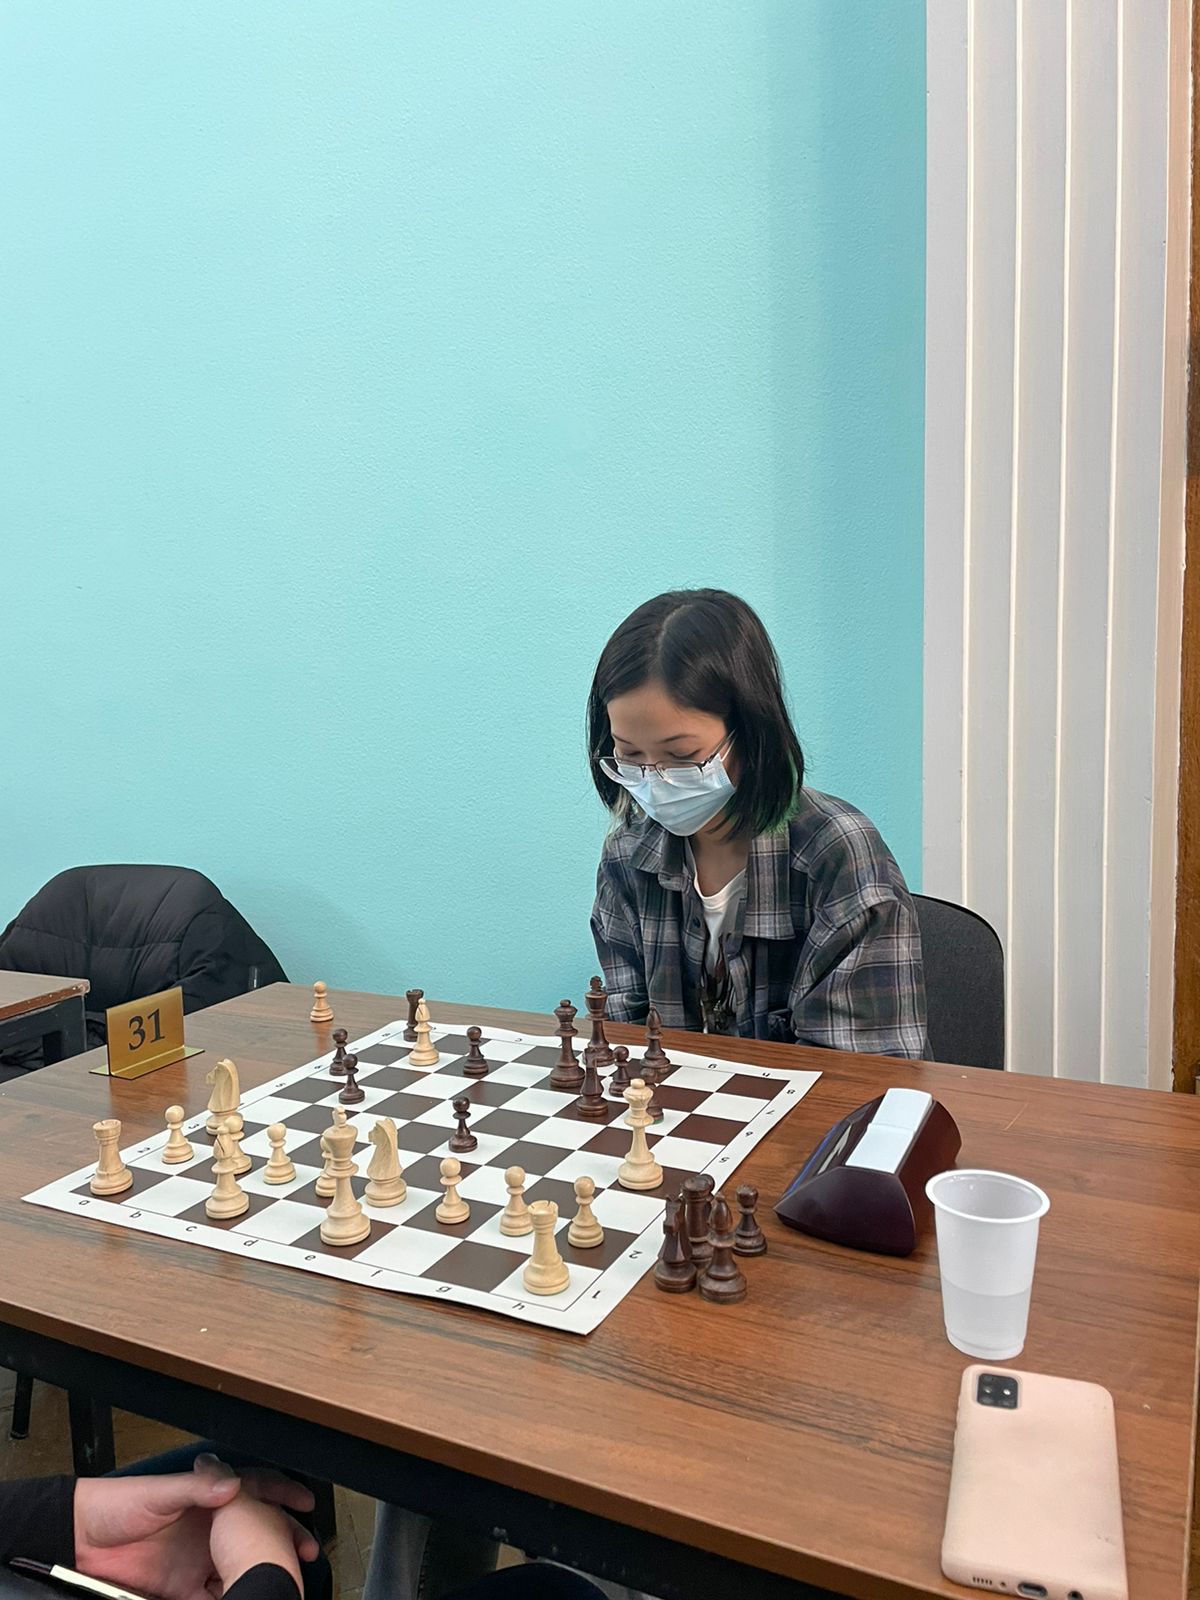 chess011121 (6).jpeg